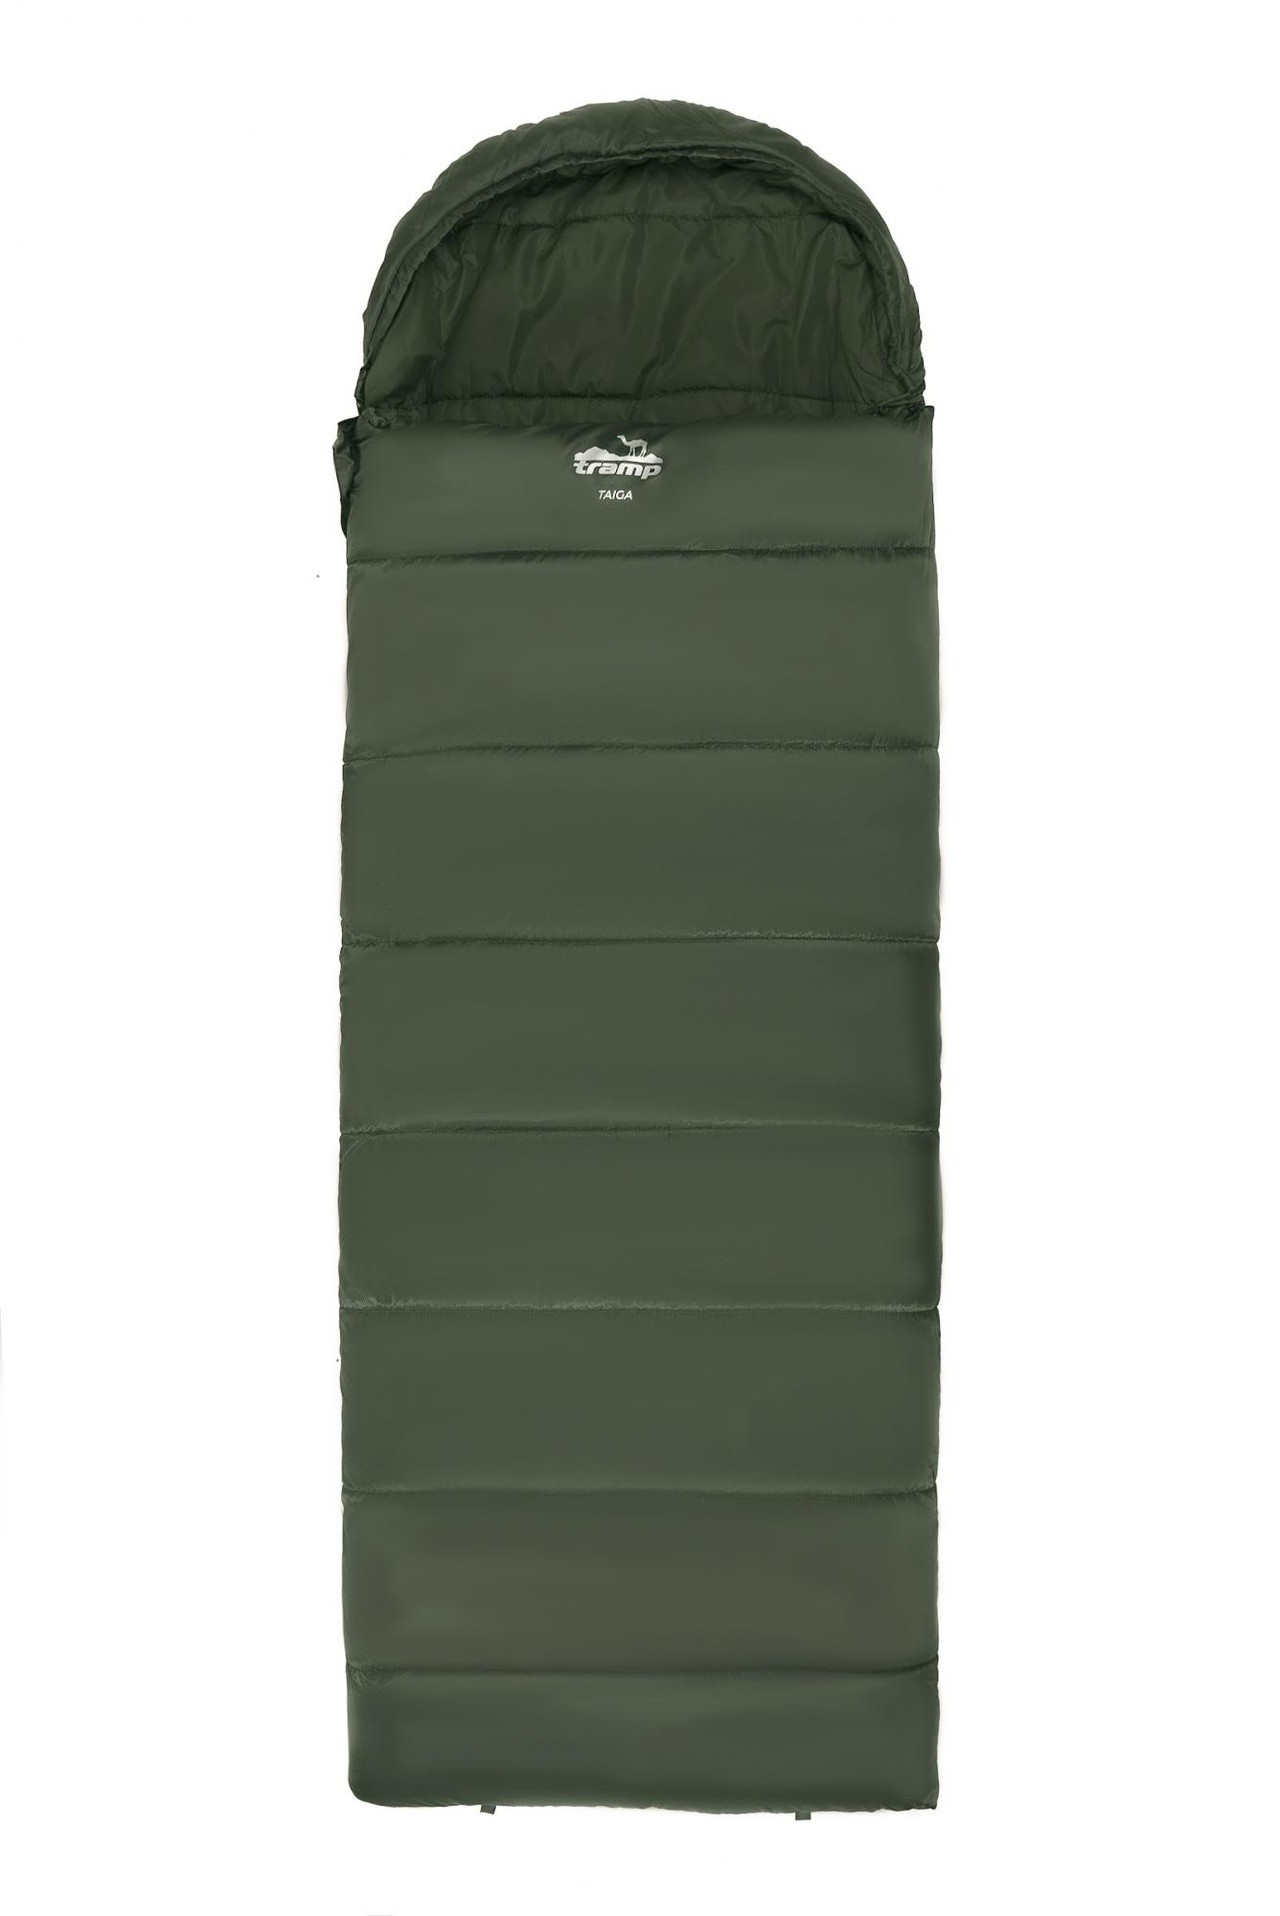 Спальный мешок одеяло Tramp Taiga 200 220*80 см (-5°C) - фото